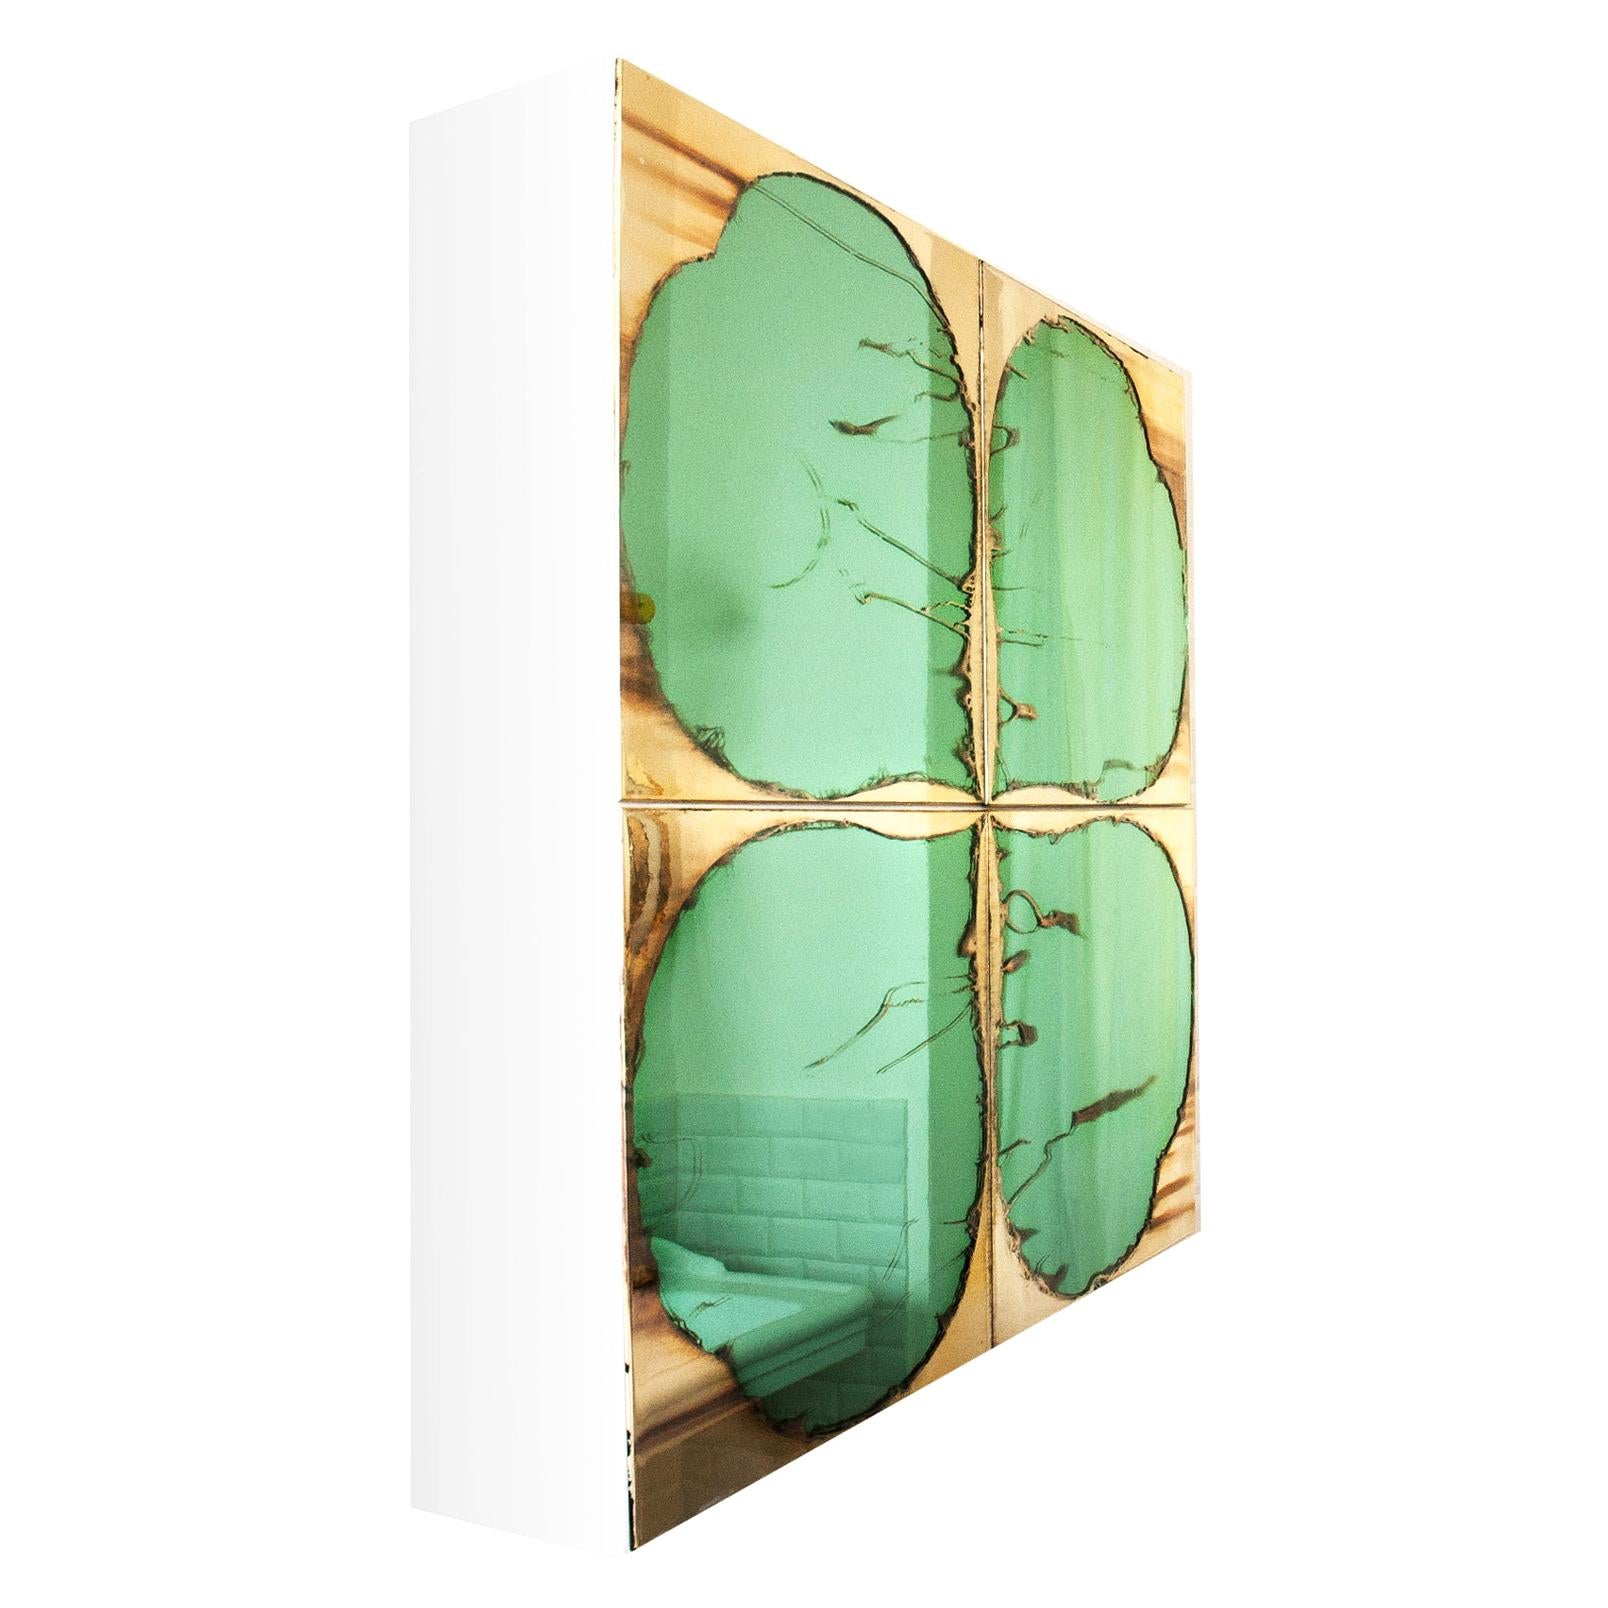 Clover Contemporary Sculpture Cabinet, Birch Wood, Jade Silvered Glass Doors